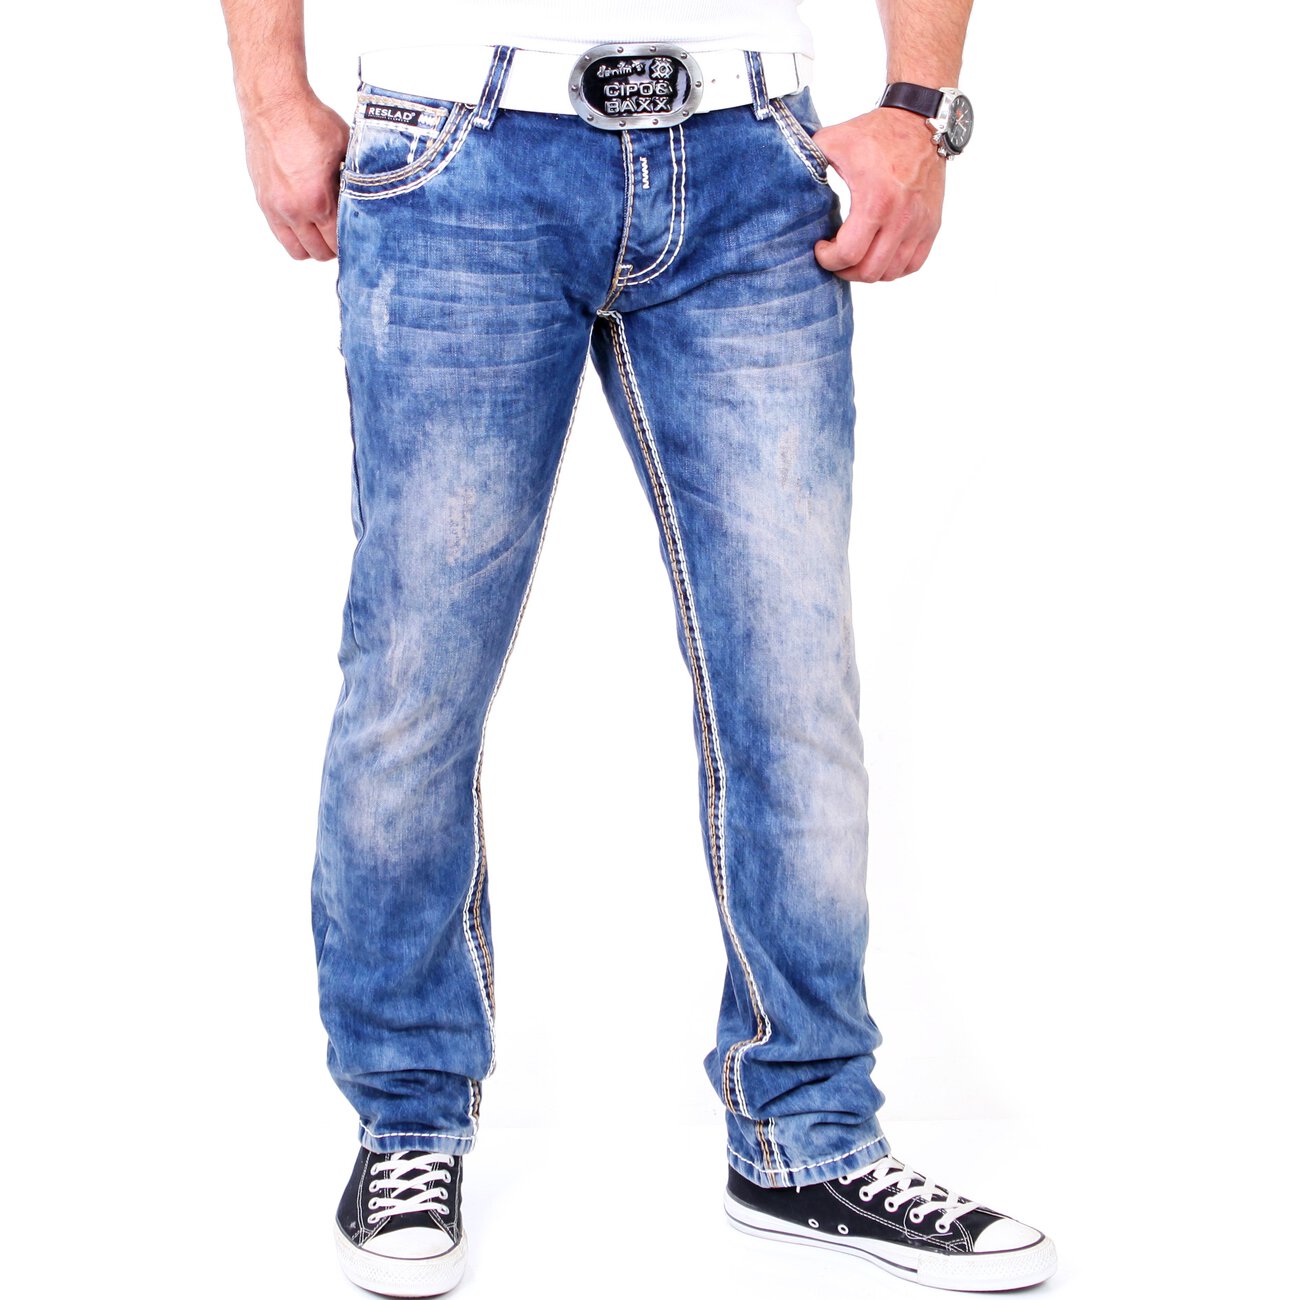 Reslad Herren Jeans Dicke Kontrast Doppel-Naht Used Look Jeanshose.